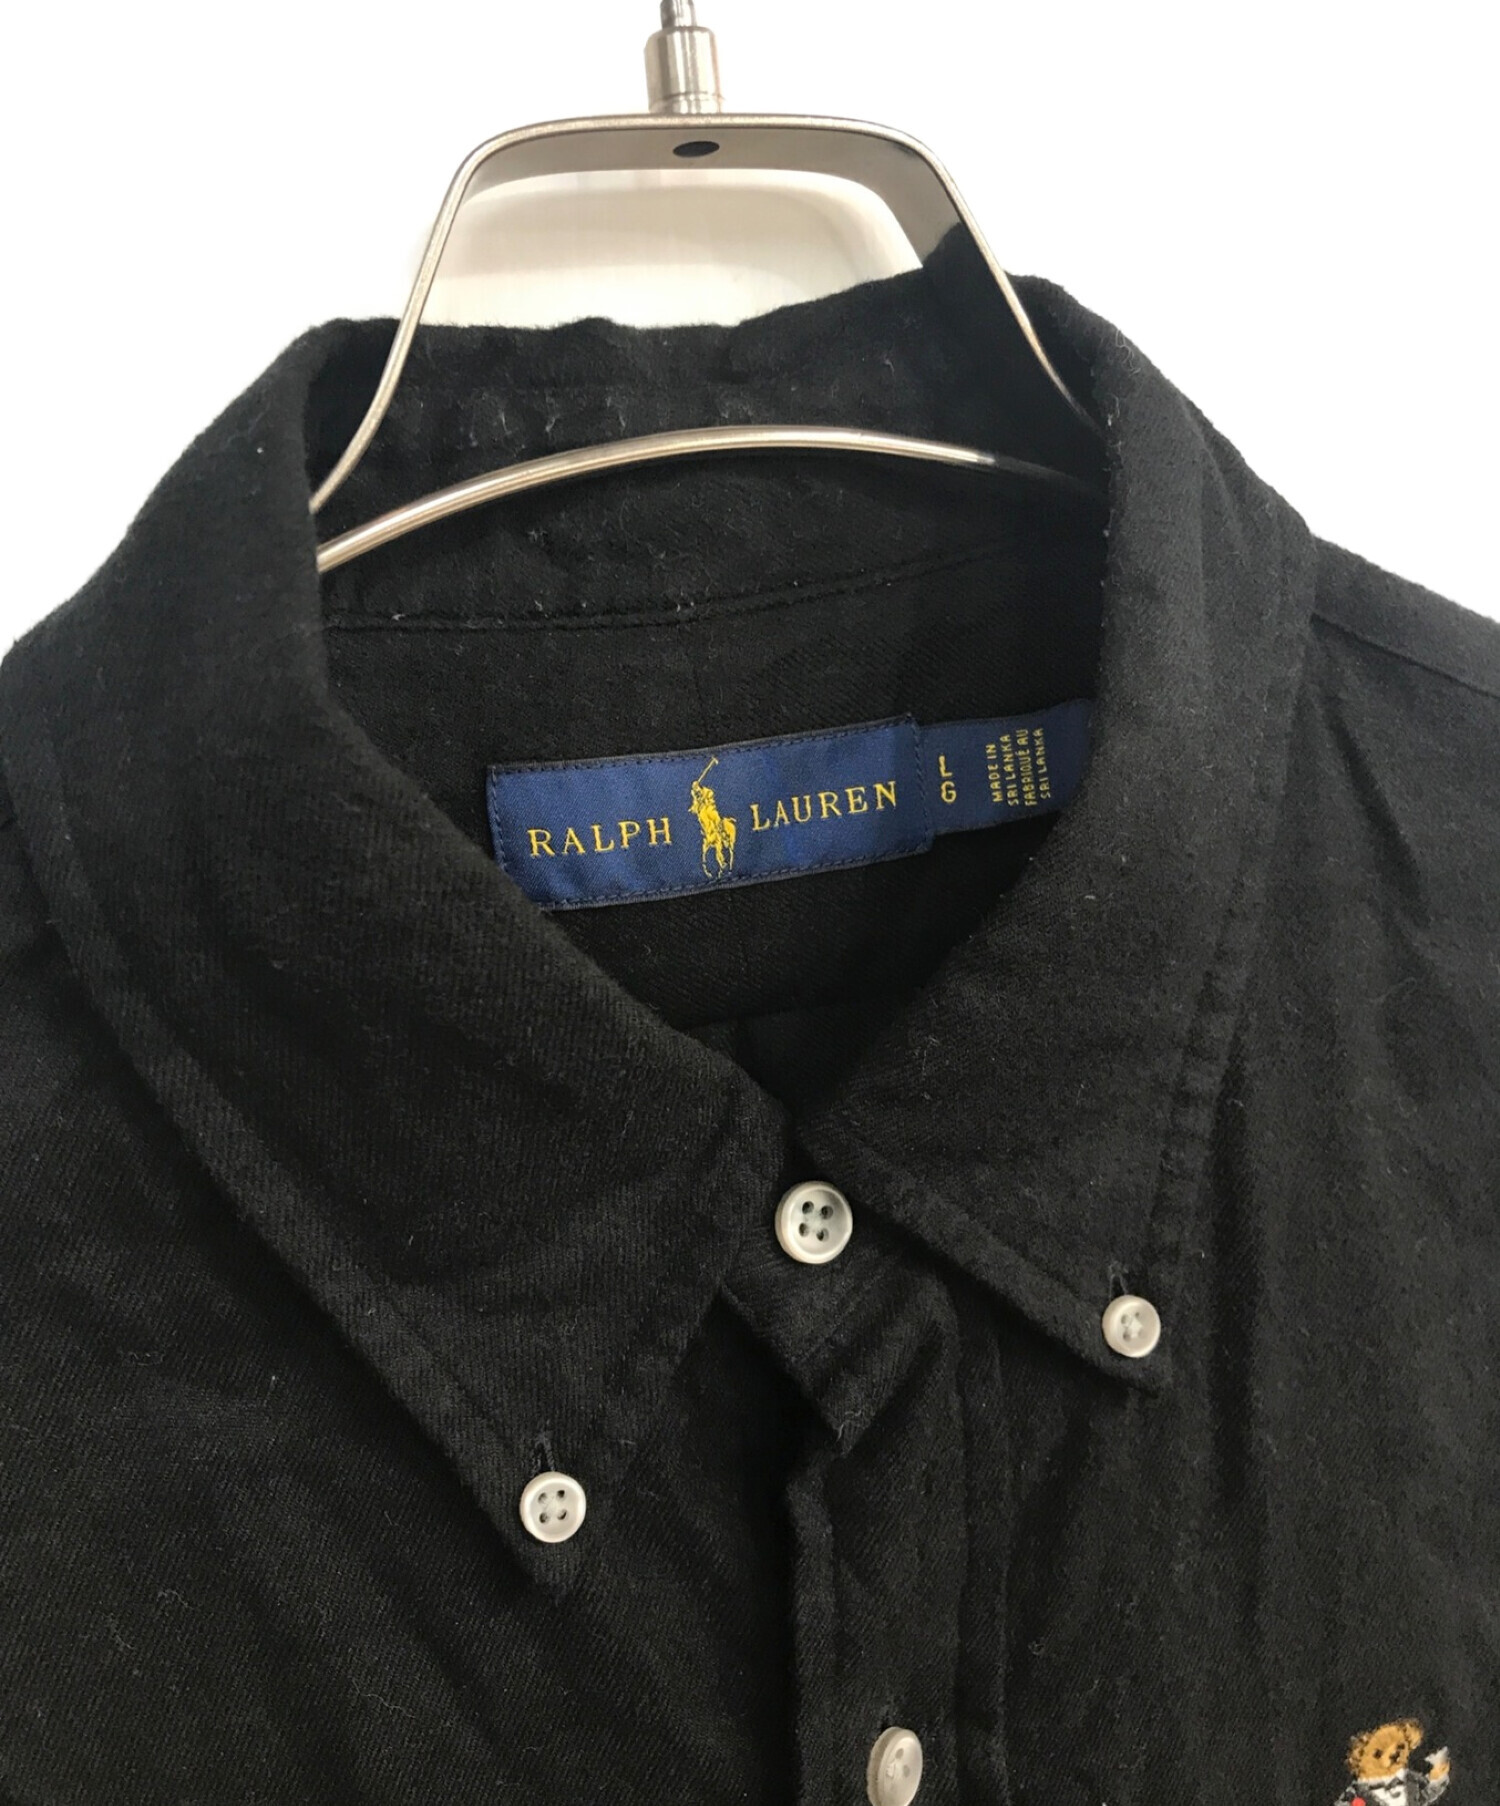 RALPH LAUREN (ラルフローレン) ポロベア総柄刺繍長袖シャツ ブラック サイズ:L